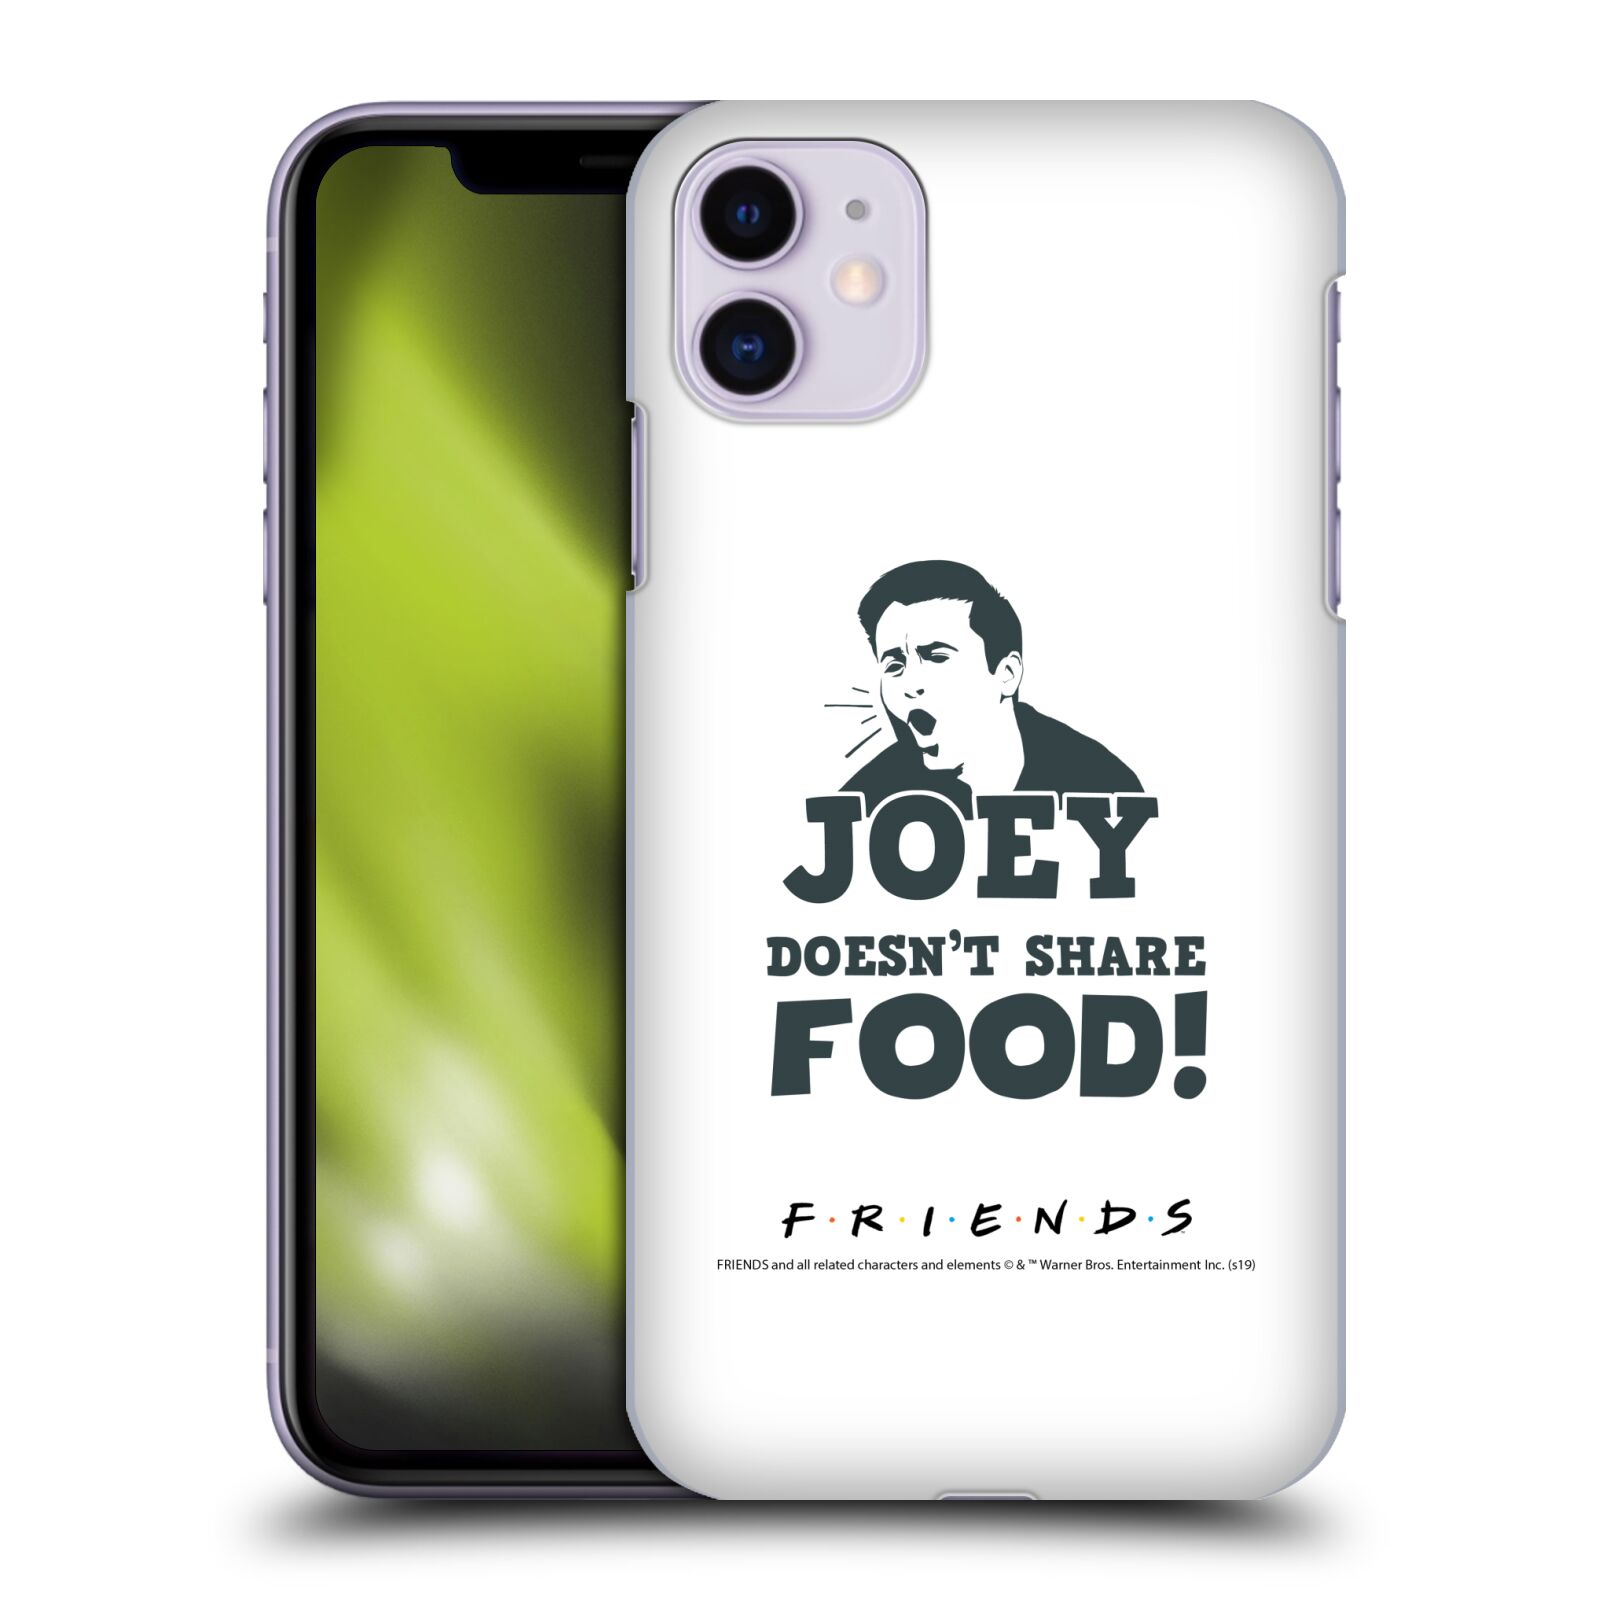 Pouzdro na mobil Apple Iphone 11 - HEAD CASE - Seriál Přátelé - Joey se o jídlo nedělí